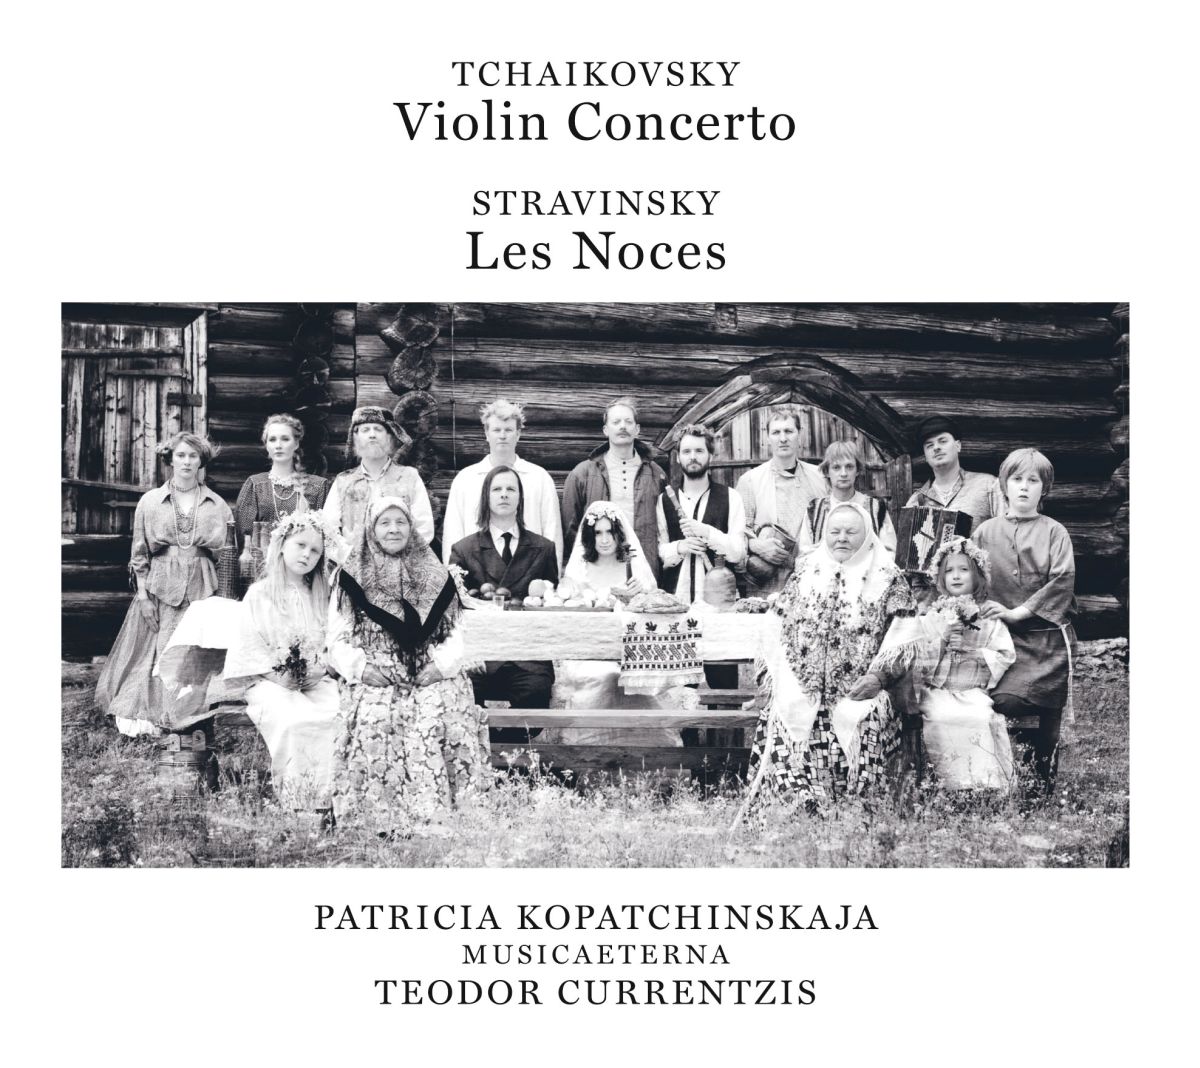 チャイコフスキー:ヴァイオリン協奏曲 ストラヴィンスキー:結婚